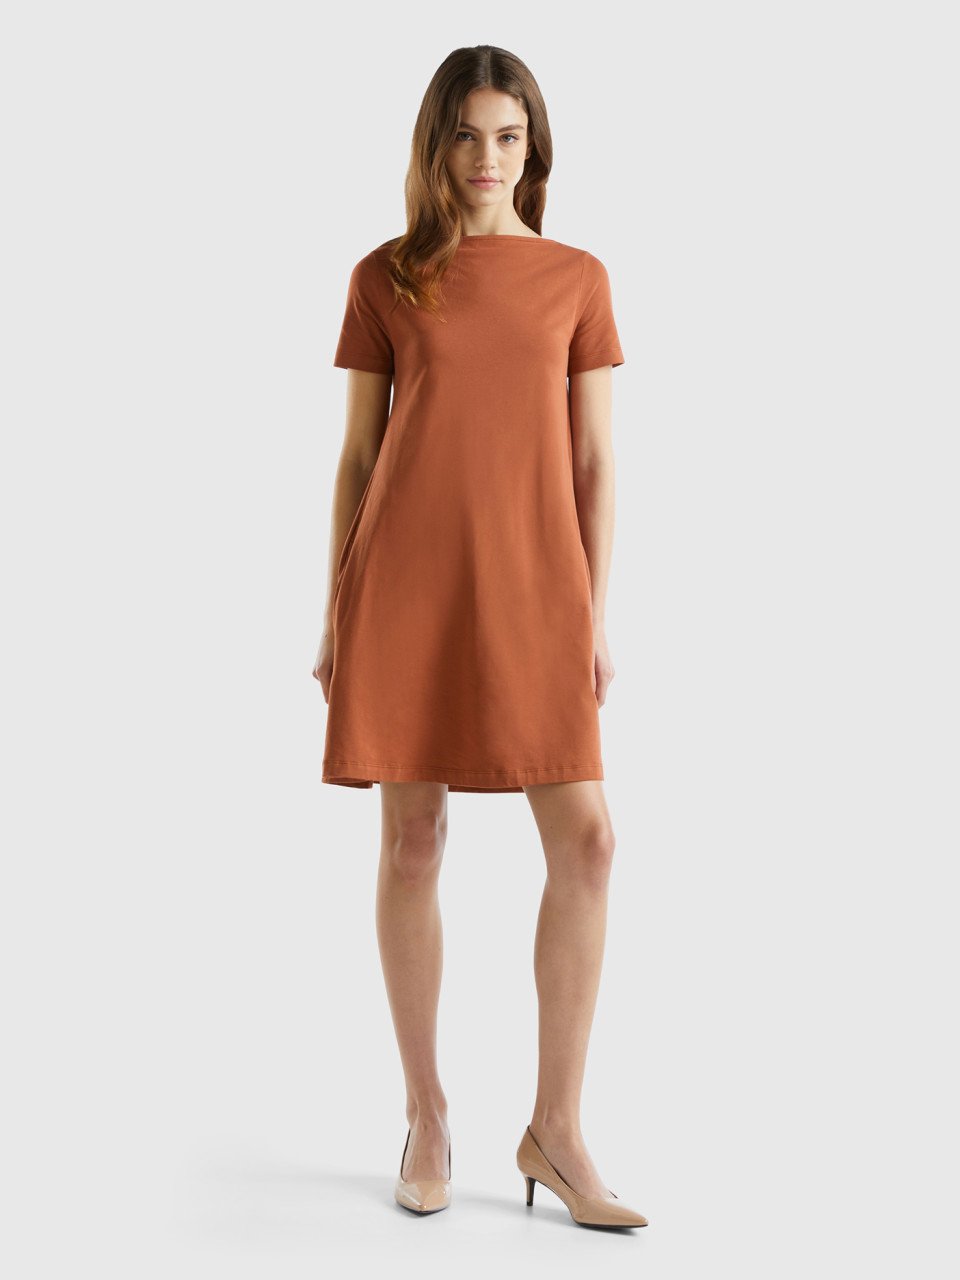 Benetton, Short Flared Dress, Brown, Women